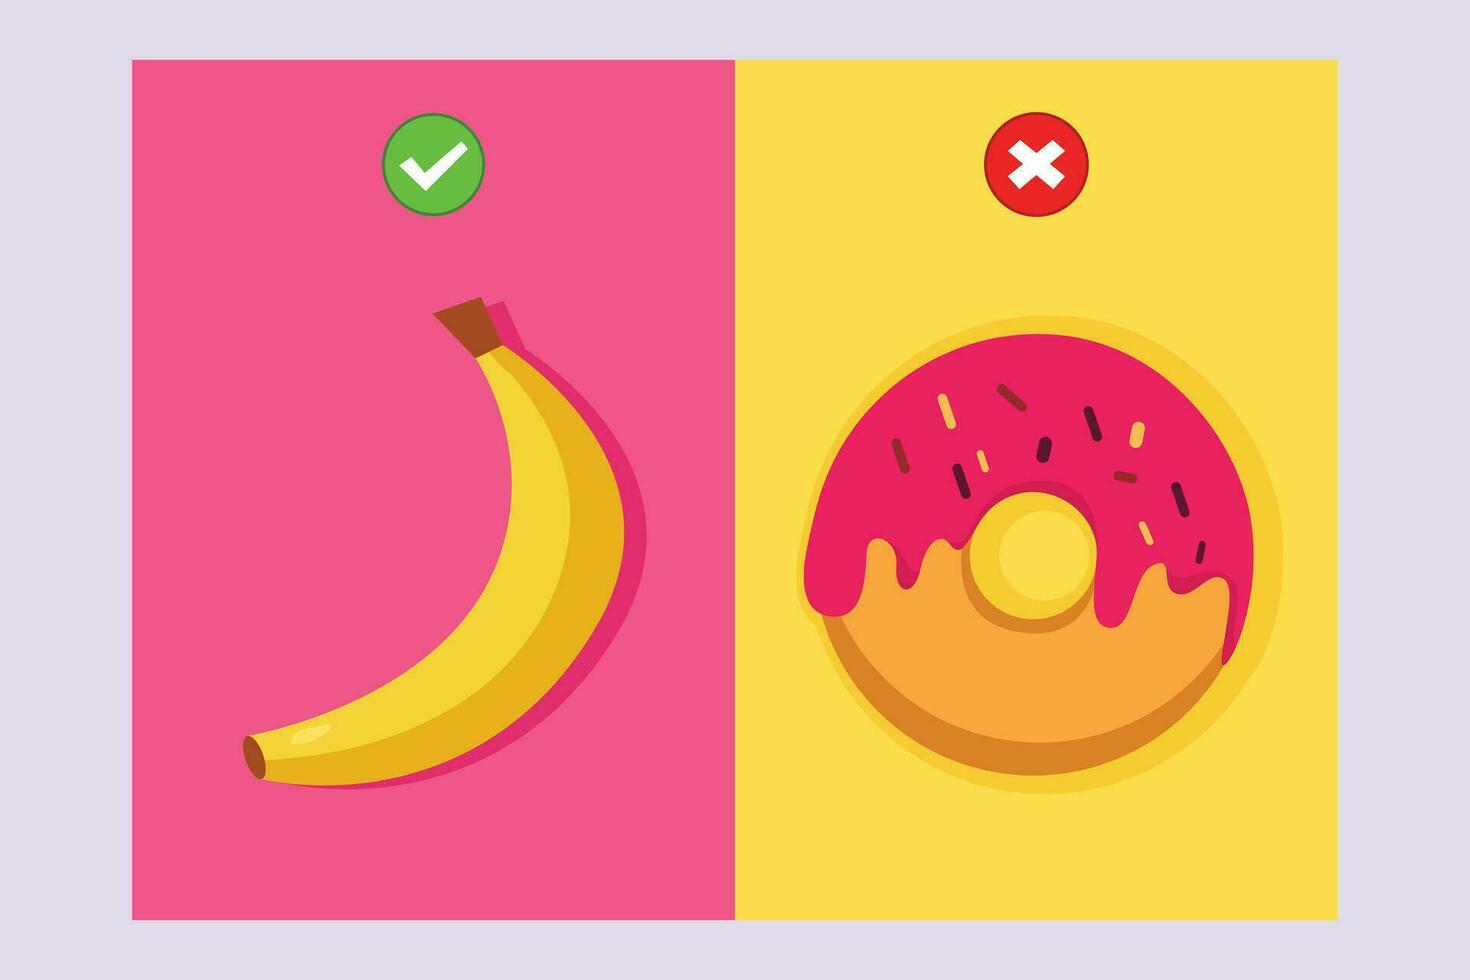 gezond vs ongezond voedsel. voedsel voeding concept. gekleurde vlak vector illustratie geïsoleerd.